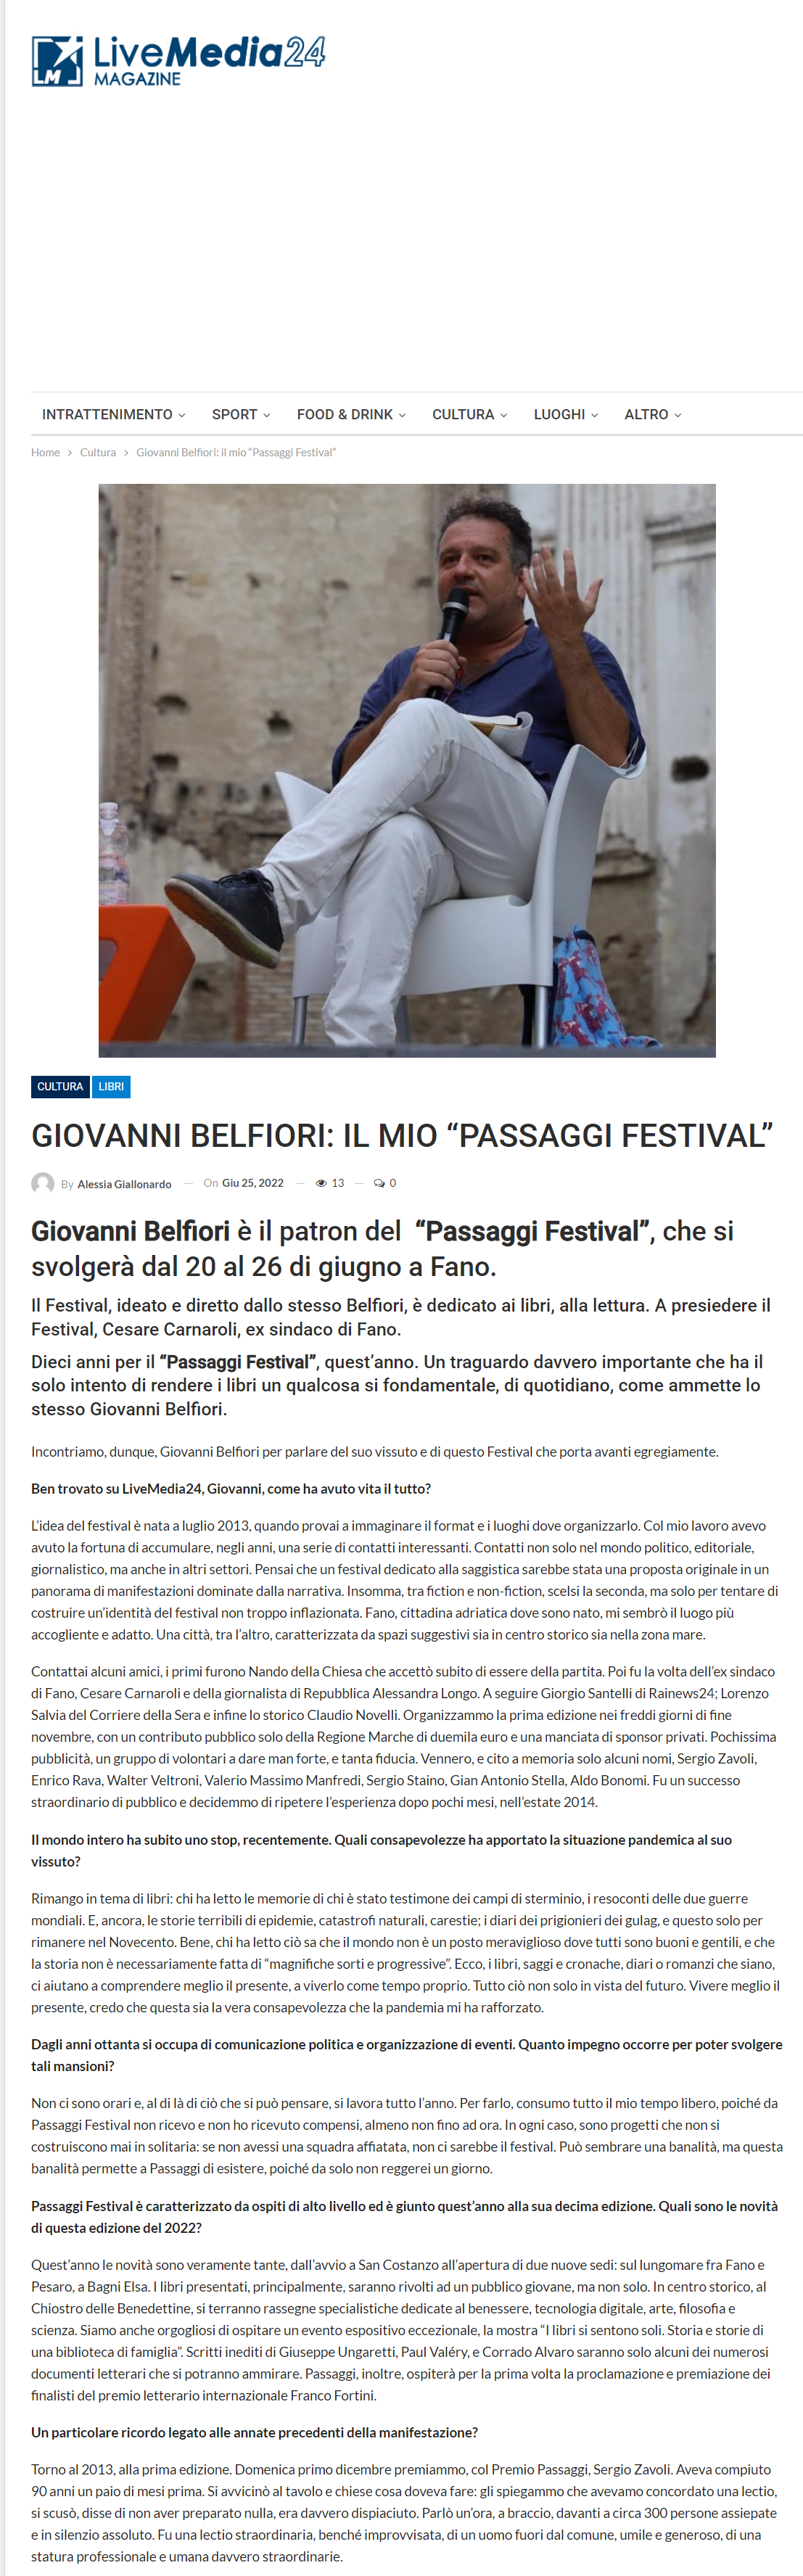 livemedia24-cultura-giovanni-belfiori-il-mio-passaggi-festival